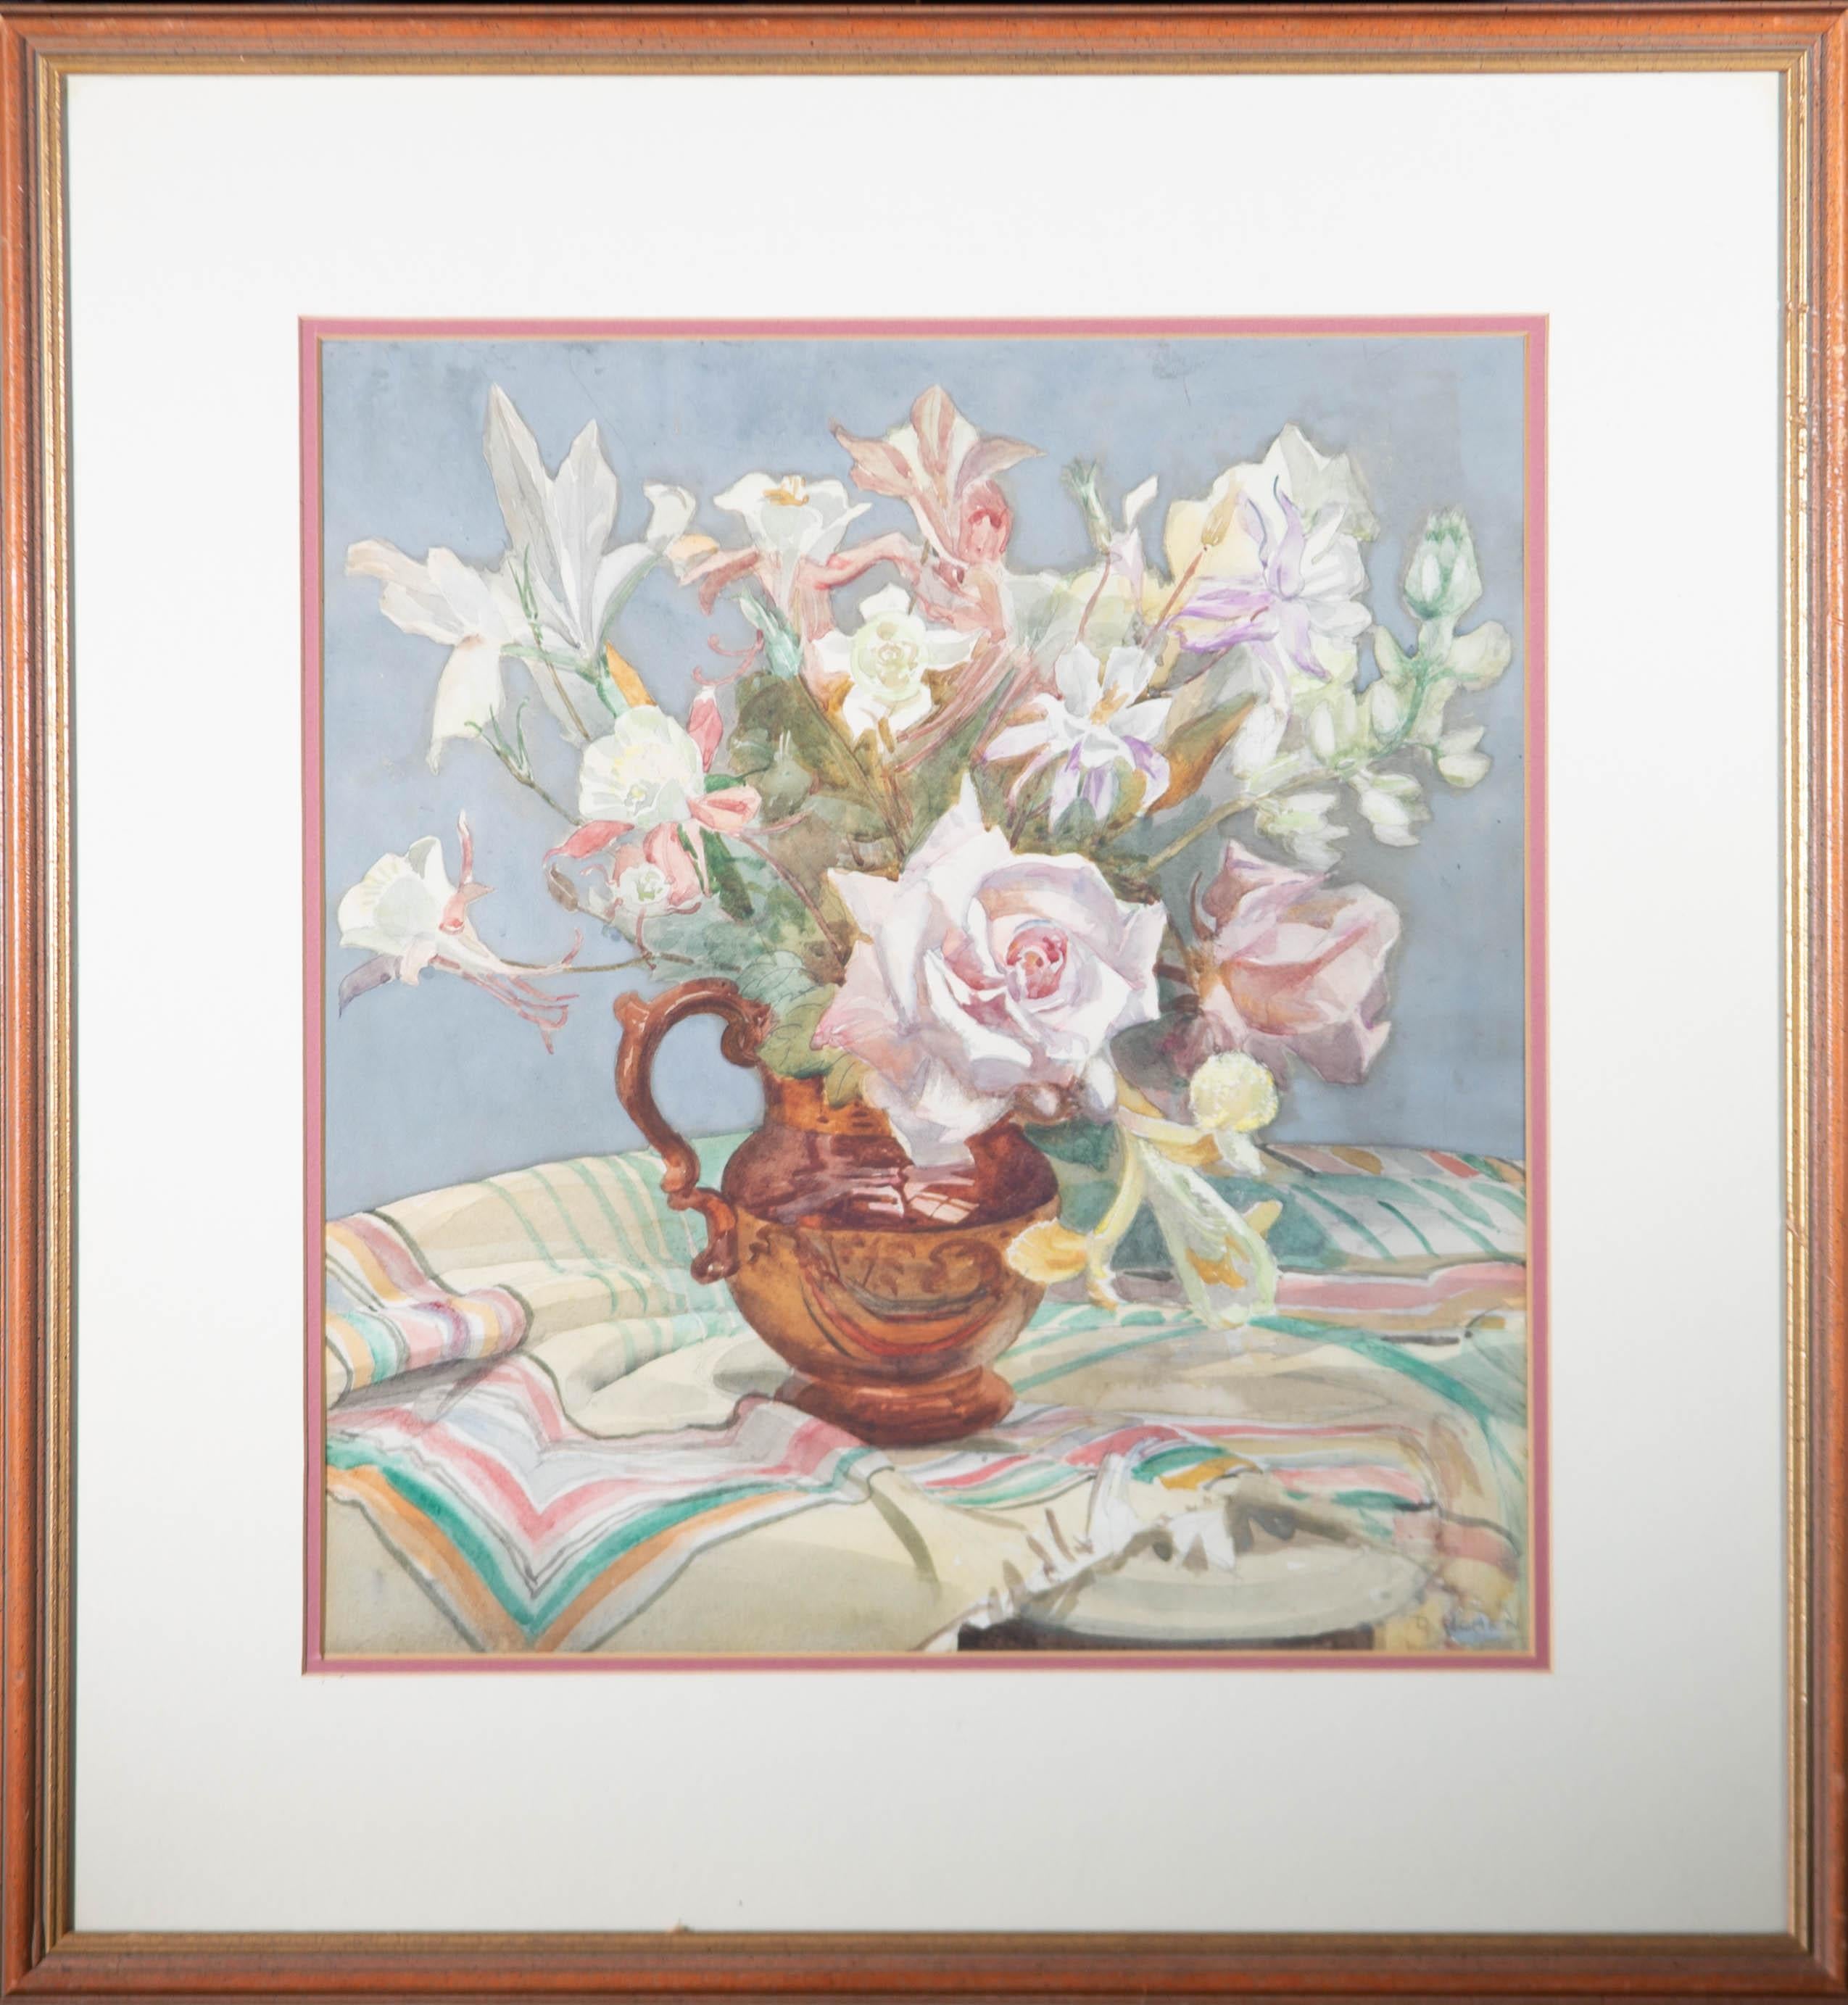 Ein schönes Aquarell mit Graphit von der britischen Künstlerin A. Dorothy Cohen, das ein Blumenstillleben darstellt. Signiert in der unteren rechten Ecke. Gut präsentiert in einem doppelten Passepartout und in einem gesprenkelten Holzrahmen mit